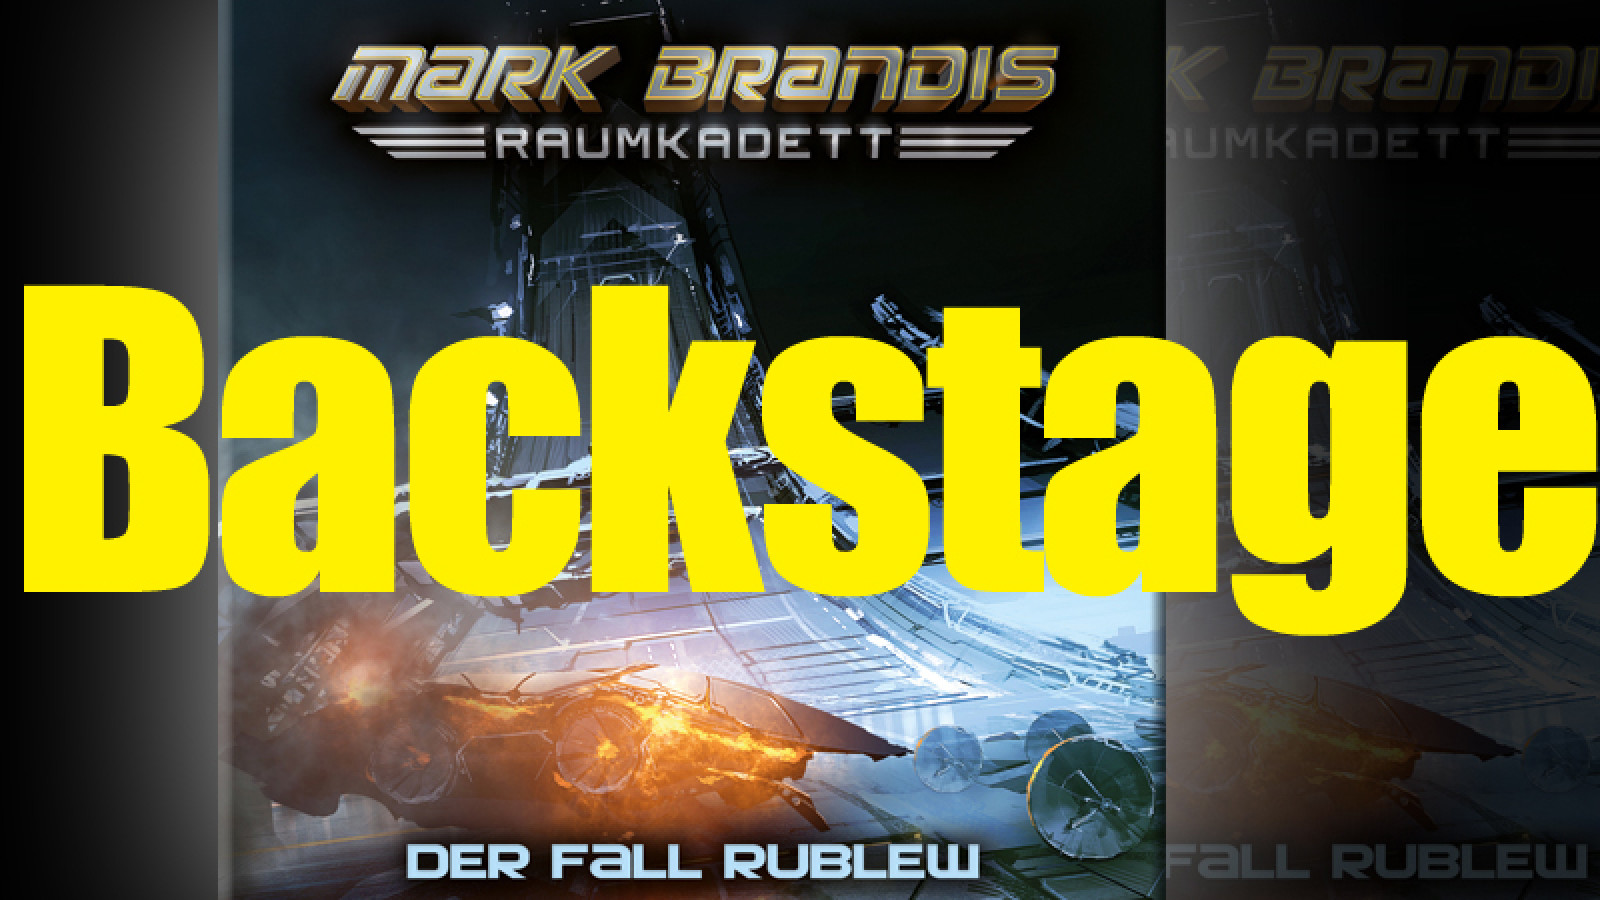 Mark Brandis – Raumkadett Backstage!